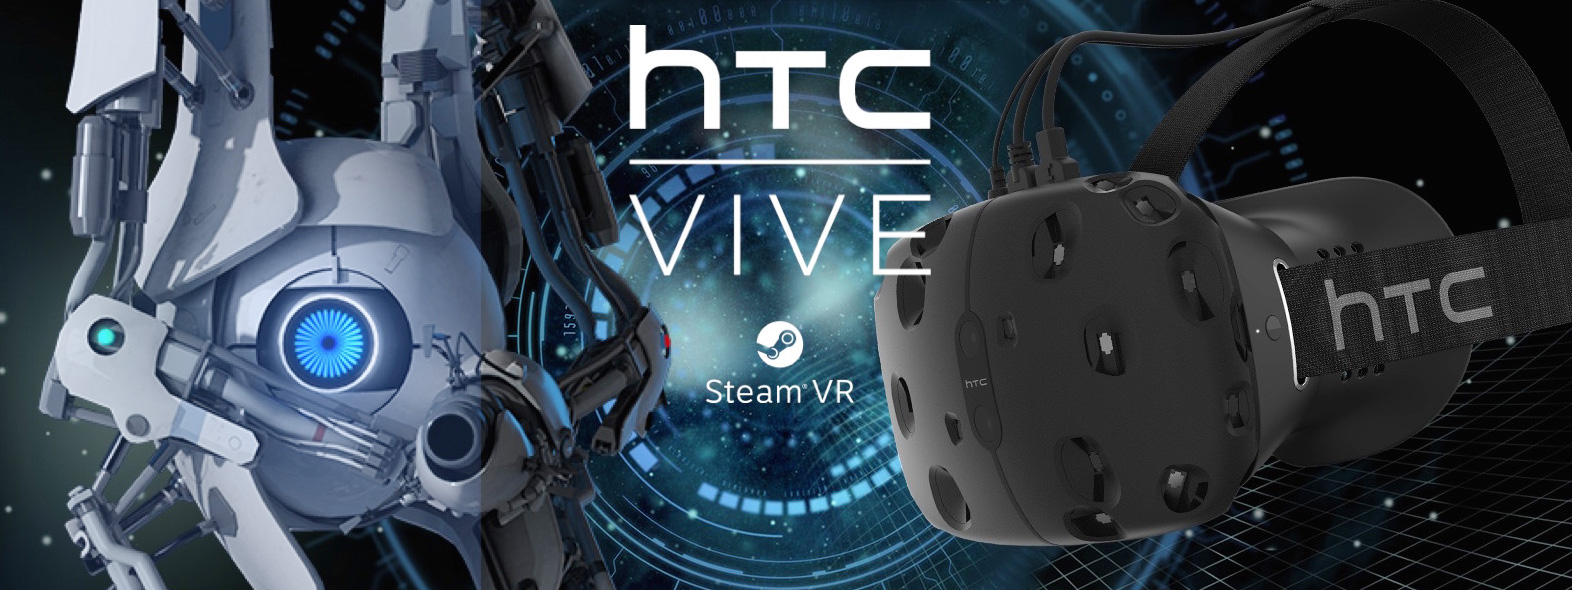 HTC chuẩn bị ra mắt kính VR mới tên Vive Eclipse?